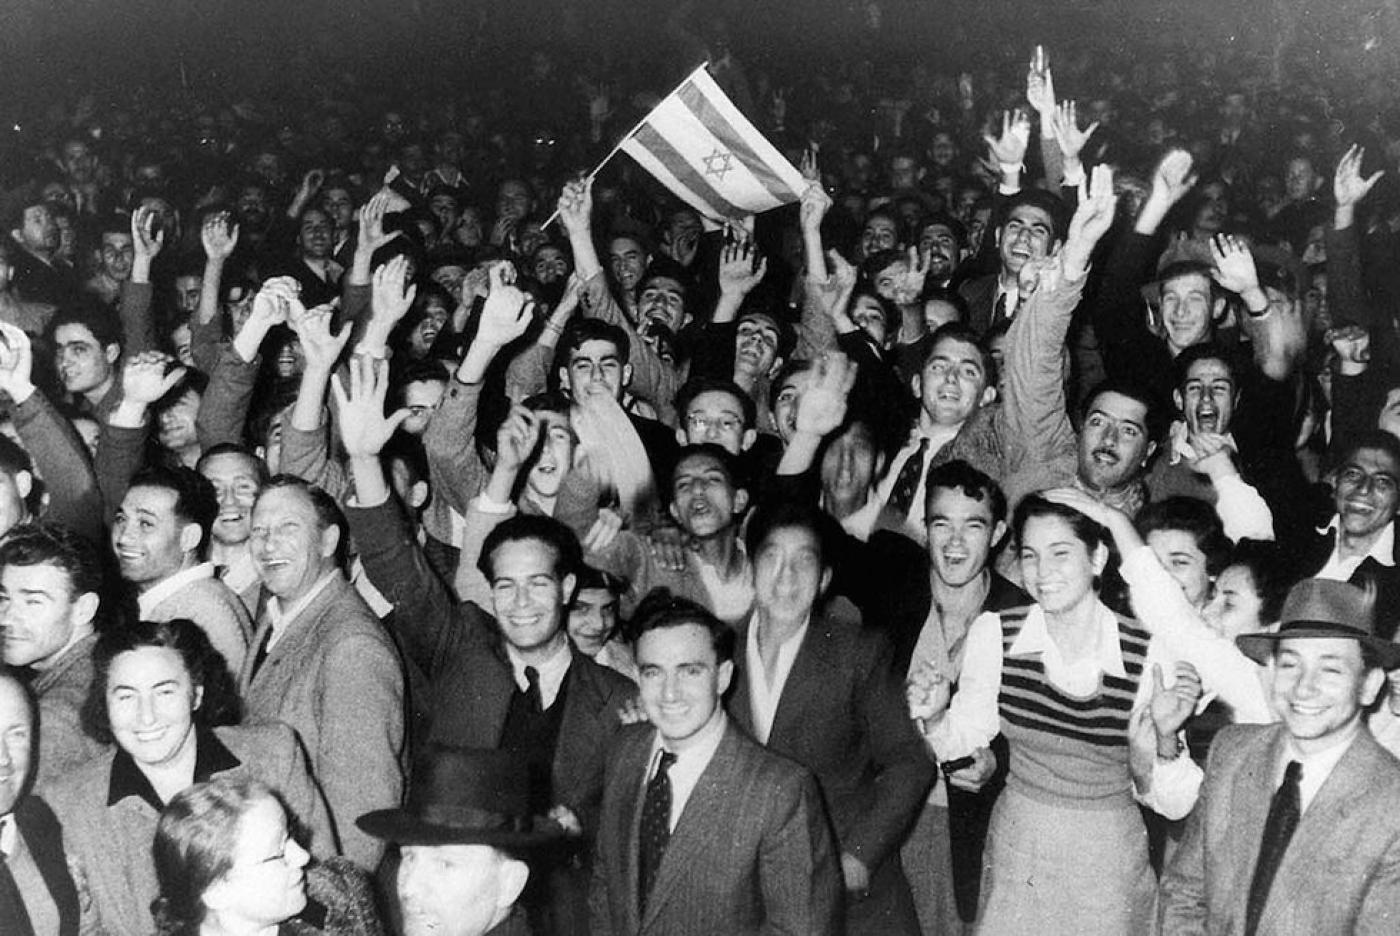 Des personnes célèbrent la décision de l’ONU de créer un État juif en divisant la Palestine en deux États, l’un juif et l’autre palestinien, à Tel-Aviv le 29 novembre 1947 (AFP)